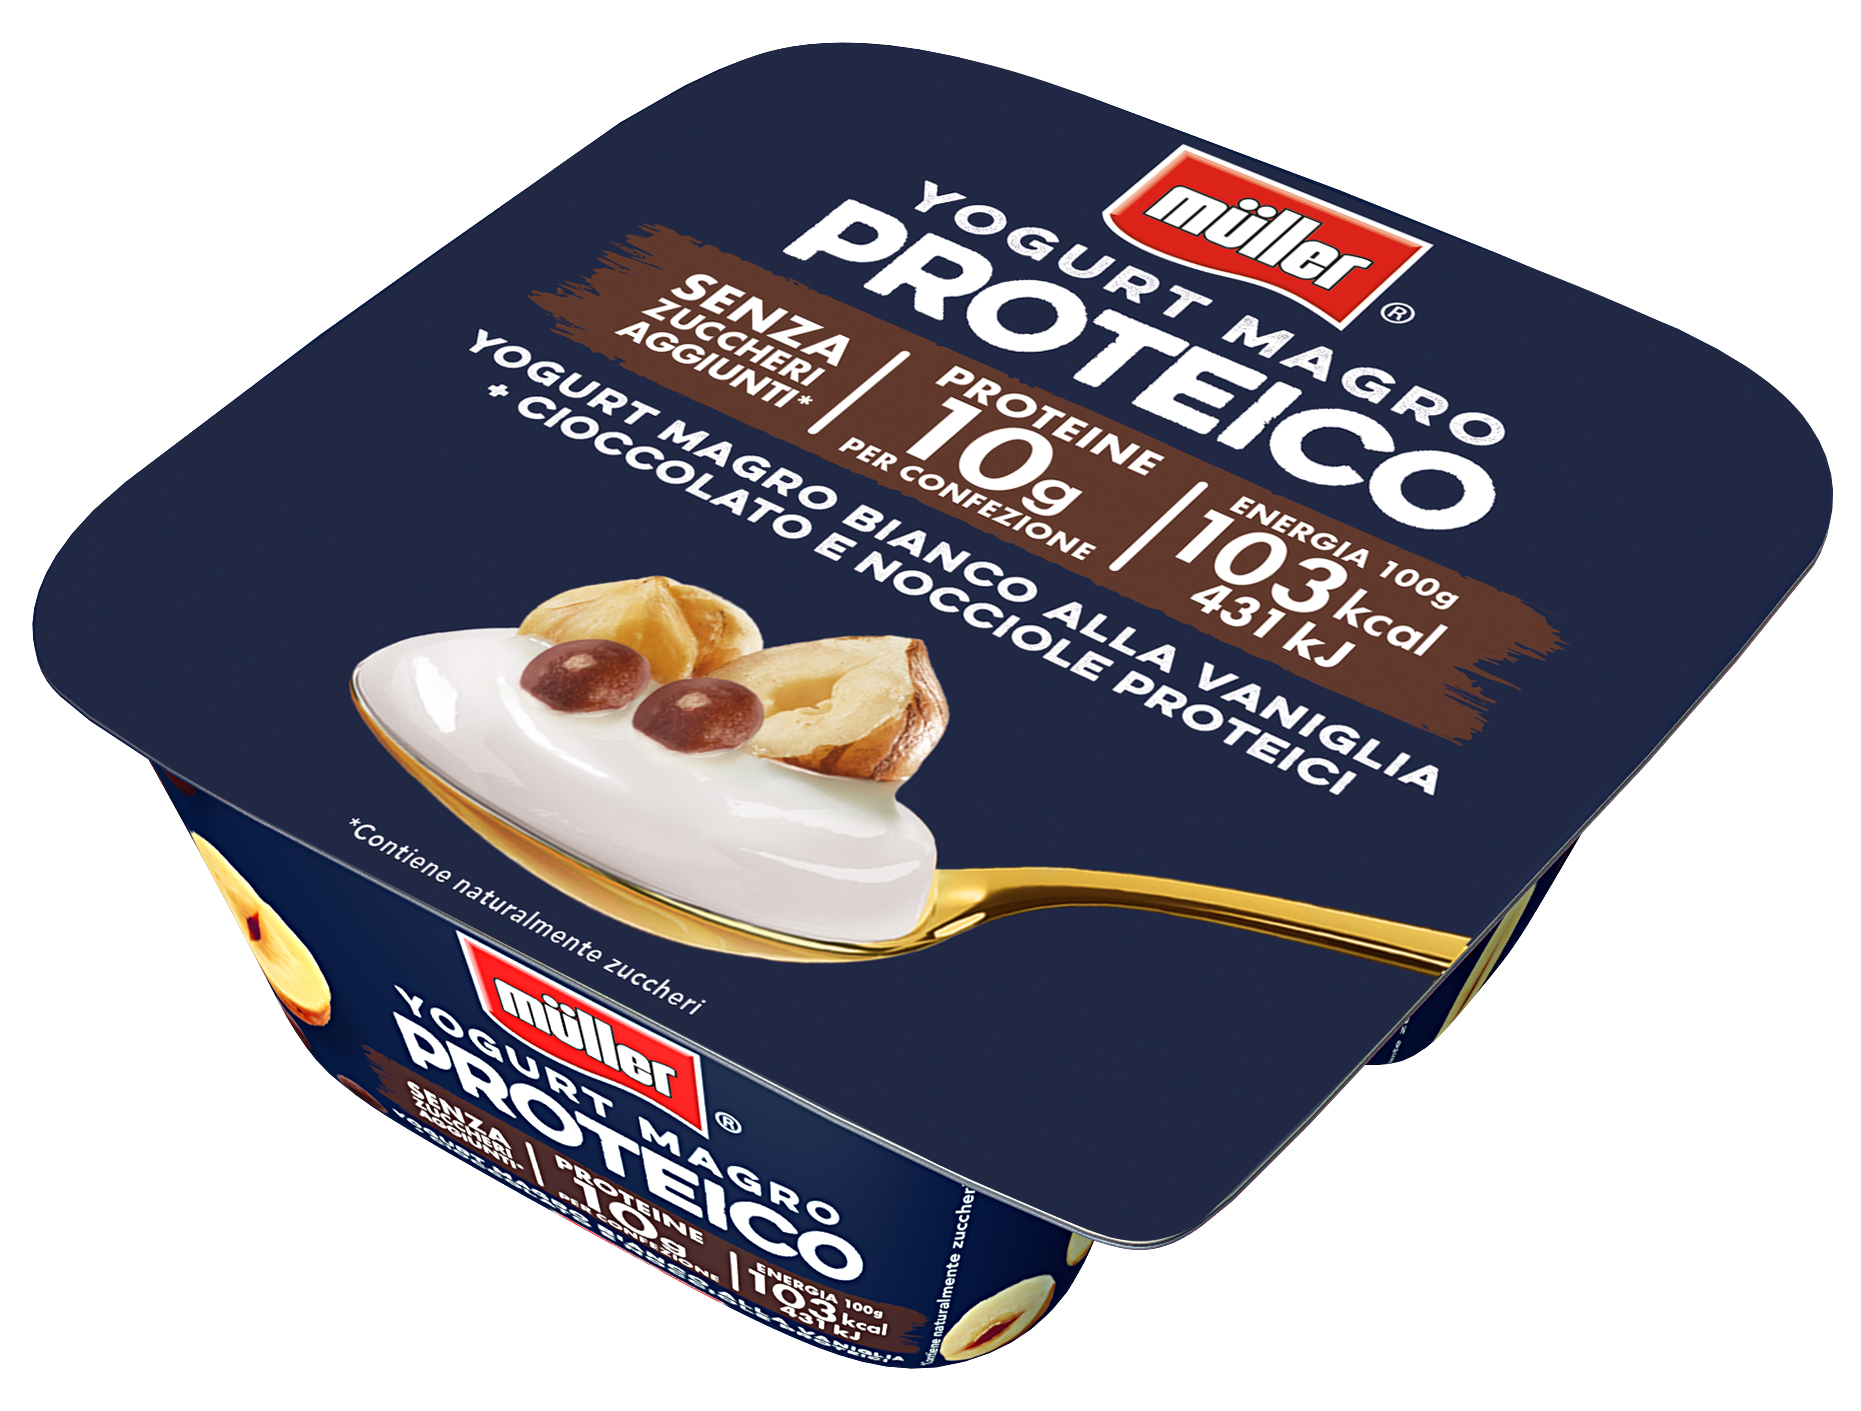 Müller Proteine Yogurt 0% Bianco alla Vaniglia + Cioccolato e Nocciole  Proteici - MOLKEREI ALOIS MUELLER GMBH & CO. G. - SEDE SECONDARIA DI VERONA  - MyBusinessCibus